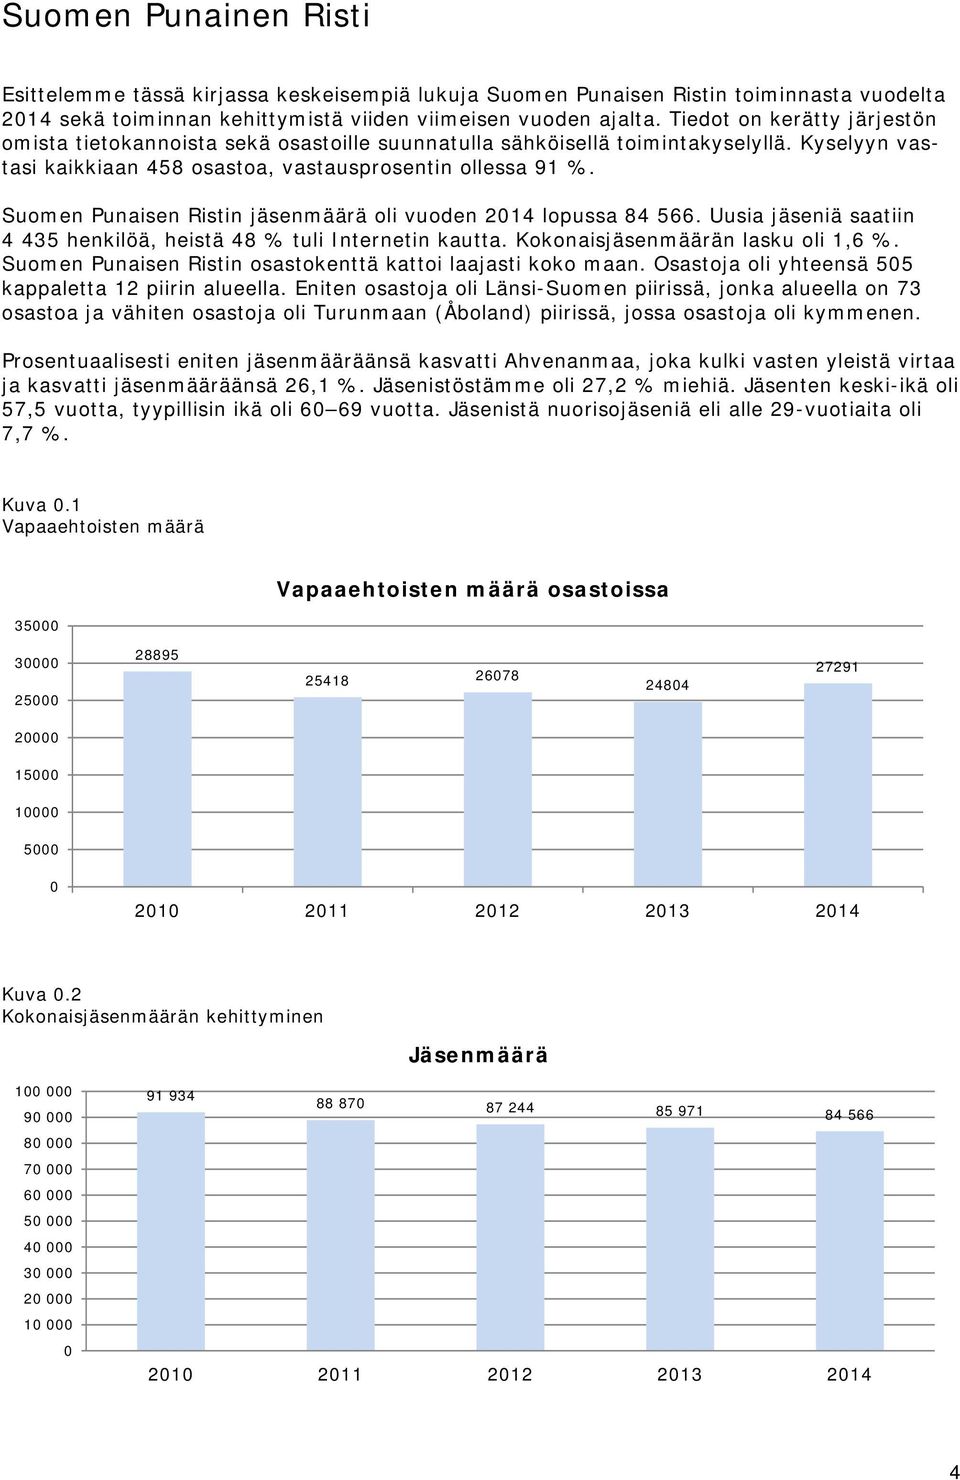 Suomen Punaisen Ristin jäsenmäärä oli vuoden 214 lopussa 84 566. Uusia jäseniä saatiin 4 435 henkilöä, heistä 48 % tuli Internetin kautta. Kokonaisjäsenmäärän lasku oli 1,6 %.